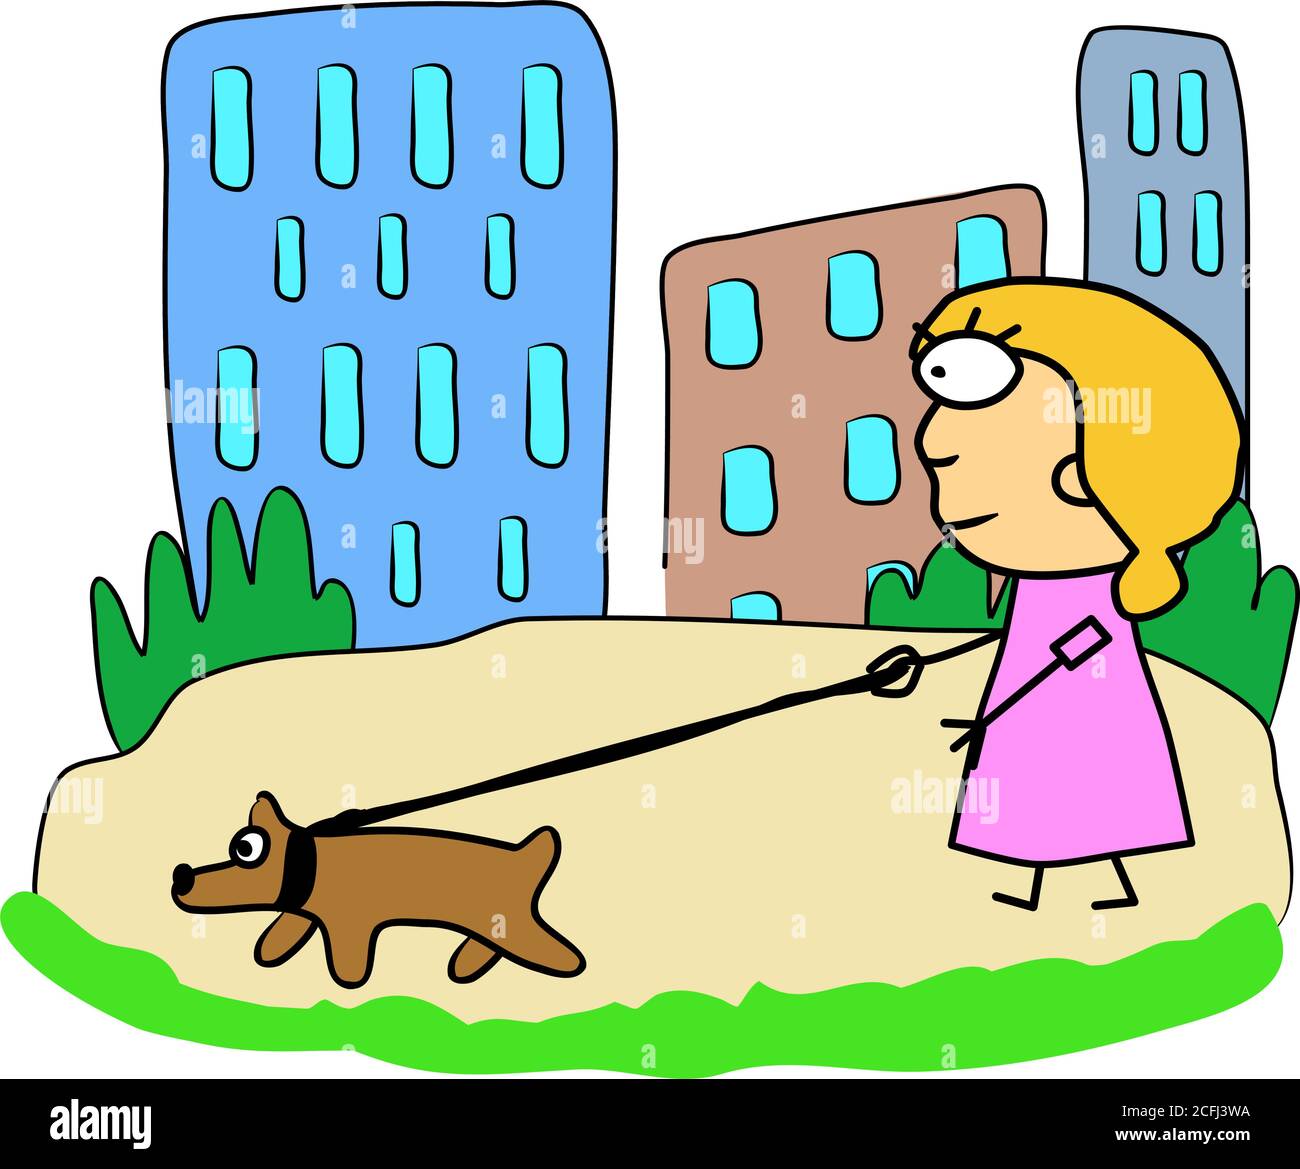 Ragazza e cane su una passeggiata. Parco vicino alla casa, erba verde. Divertente immagine a colori, disegno a mano illustrazione colore moderno Illustrazione Vettoriale